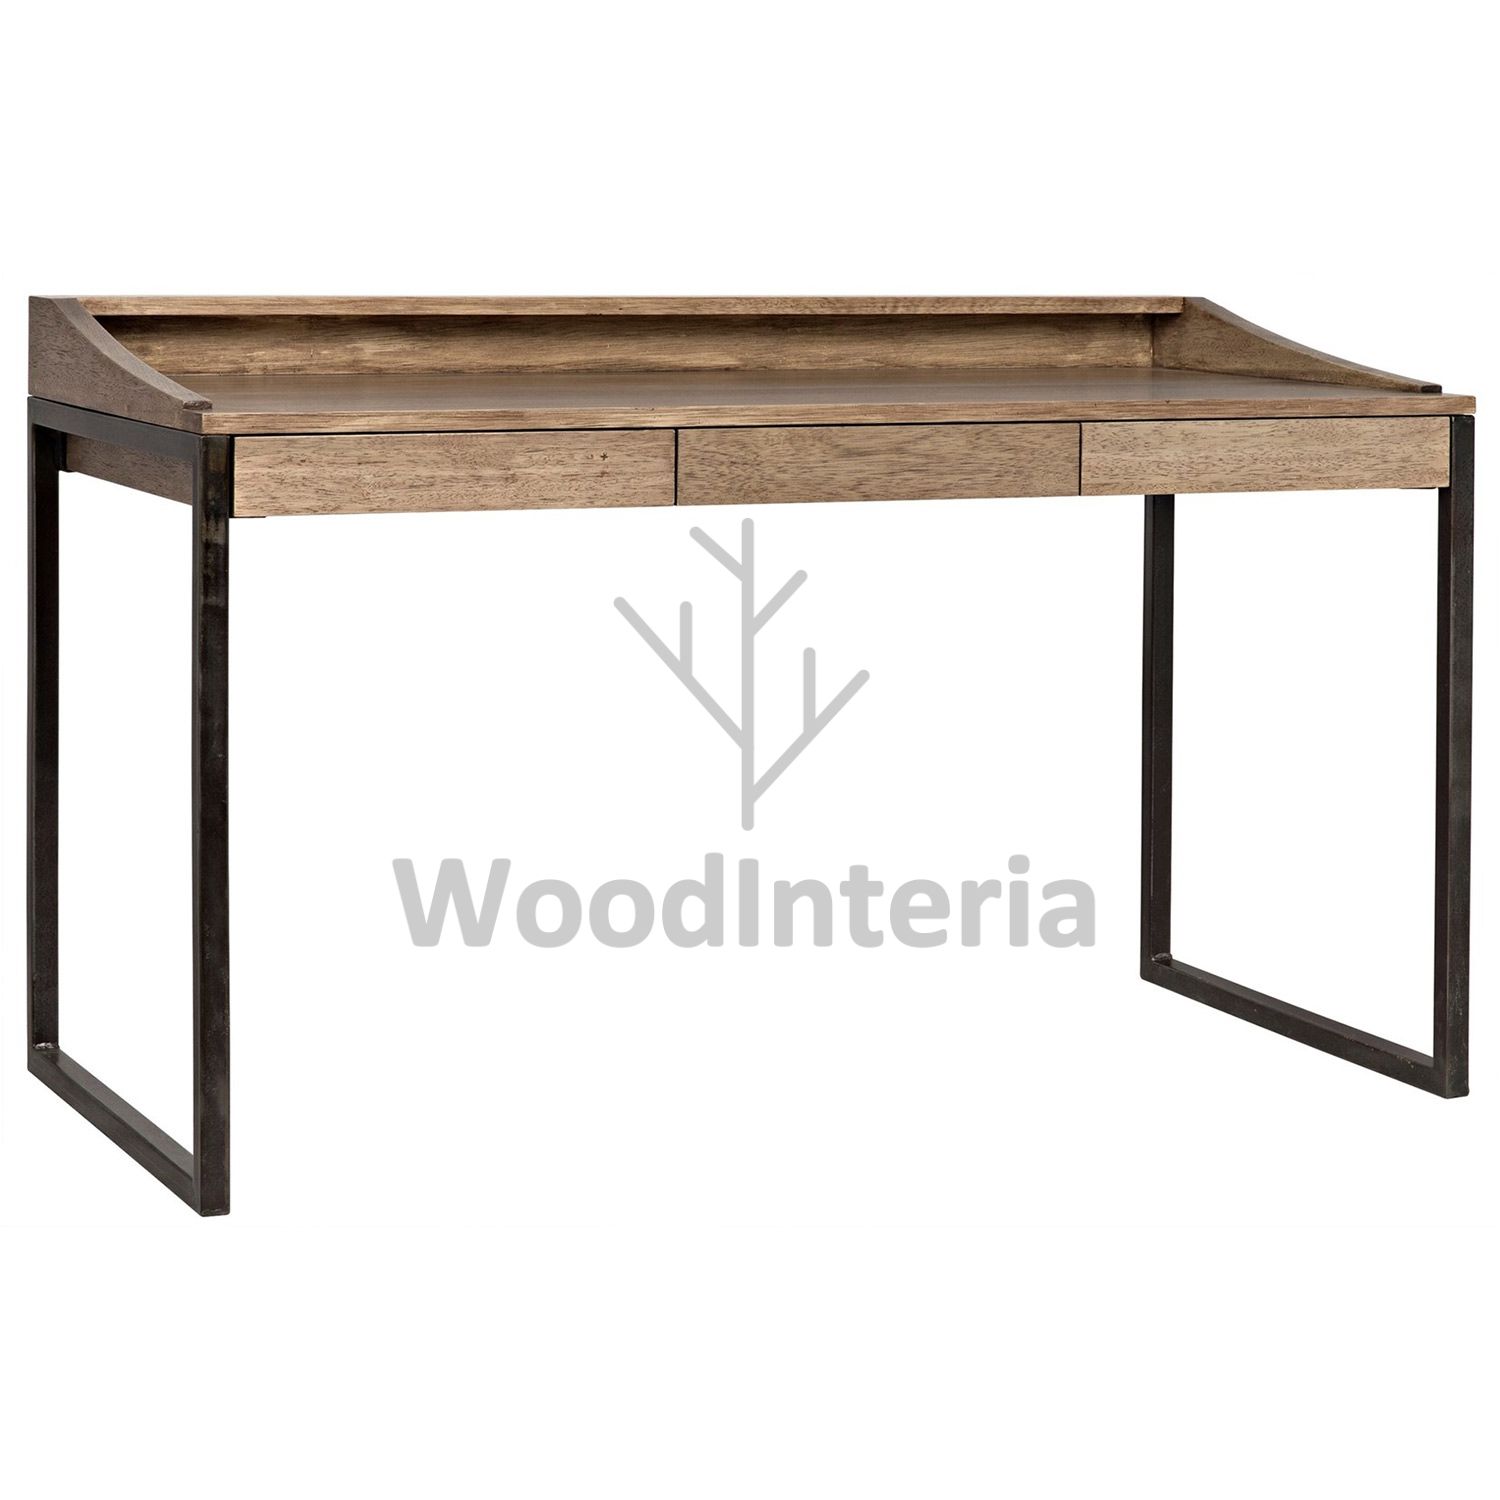 фото рабочий стол eco elizabeth table в интерьере лофт эко | WoodInteria